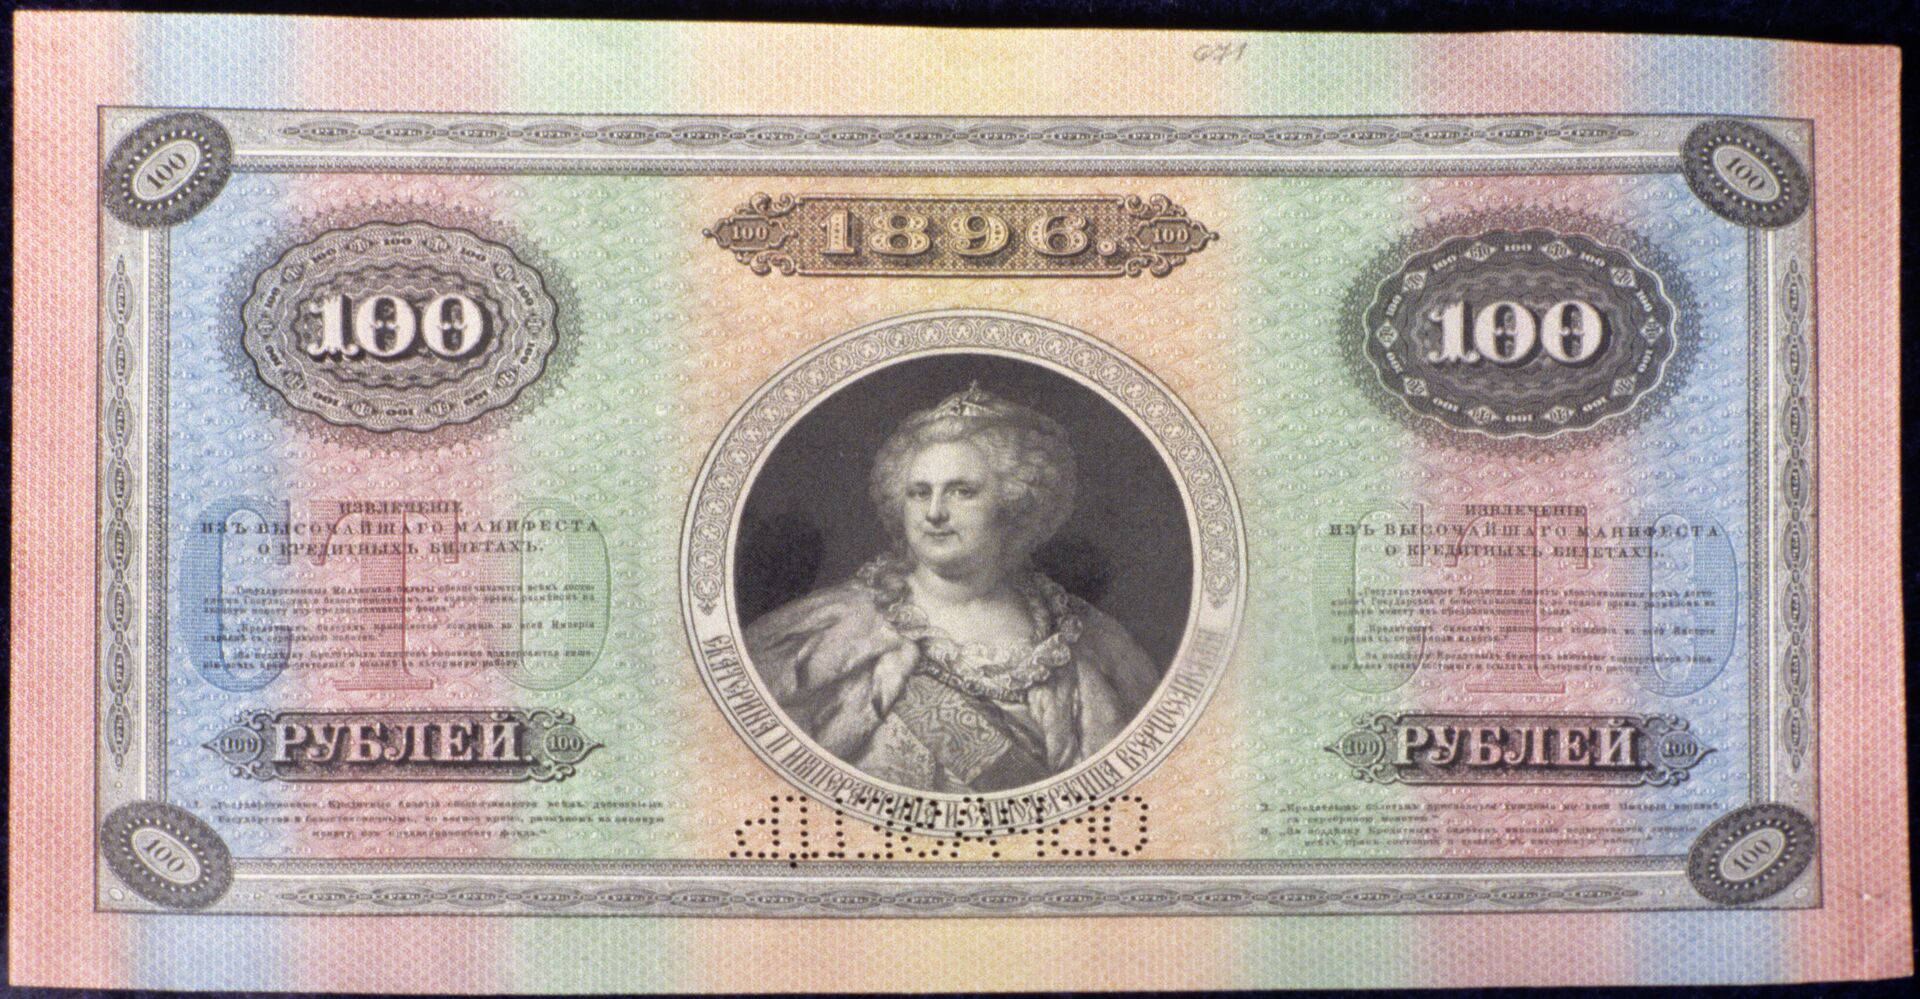 Государственный кредитный билет 1896 г. с портретом Екатерины II - РИА Новости, 1920, 16.05.2021